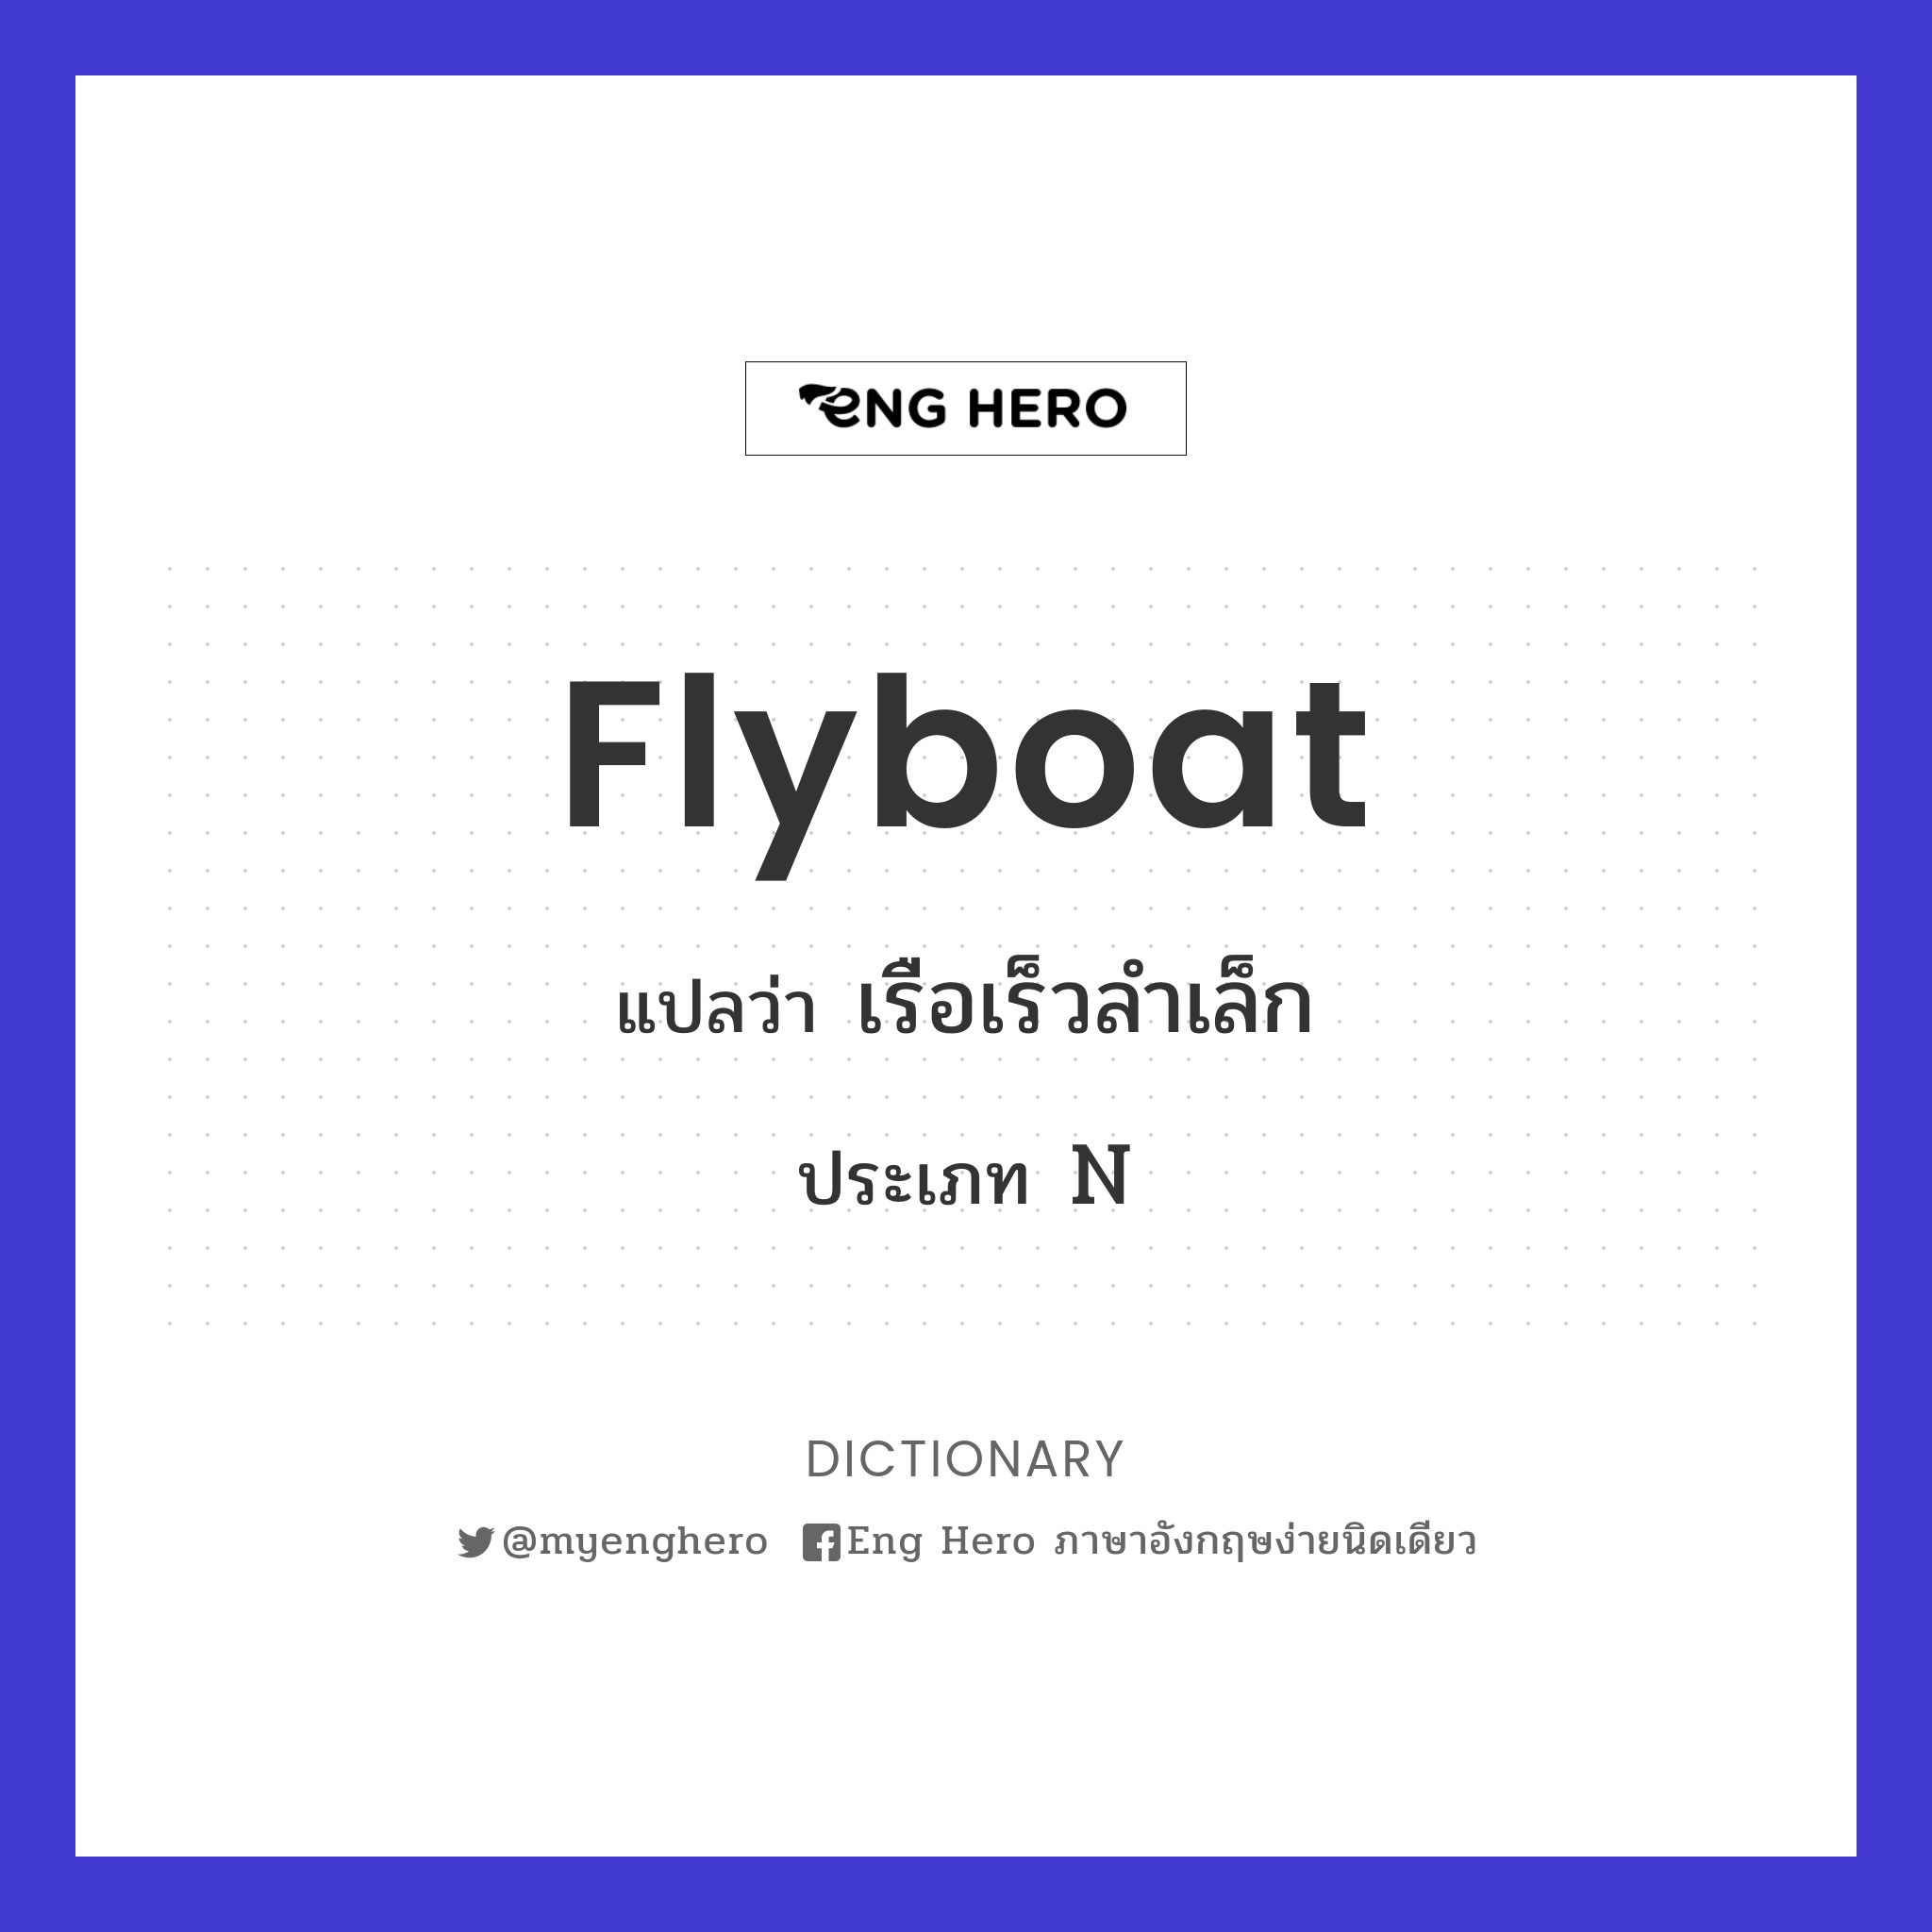 flyboat